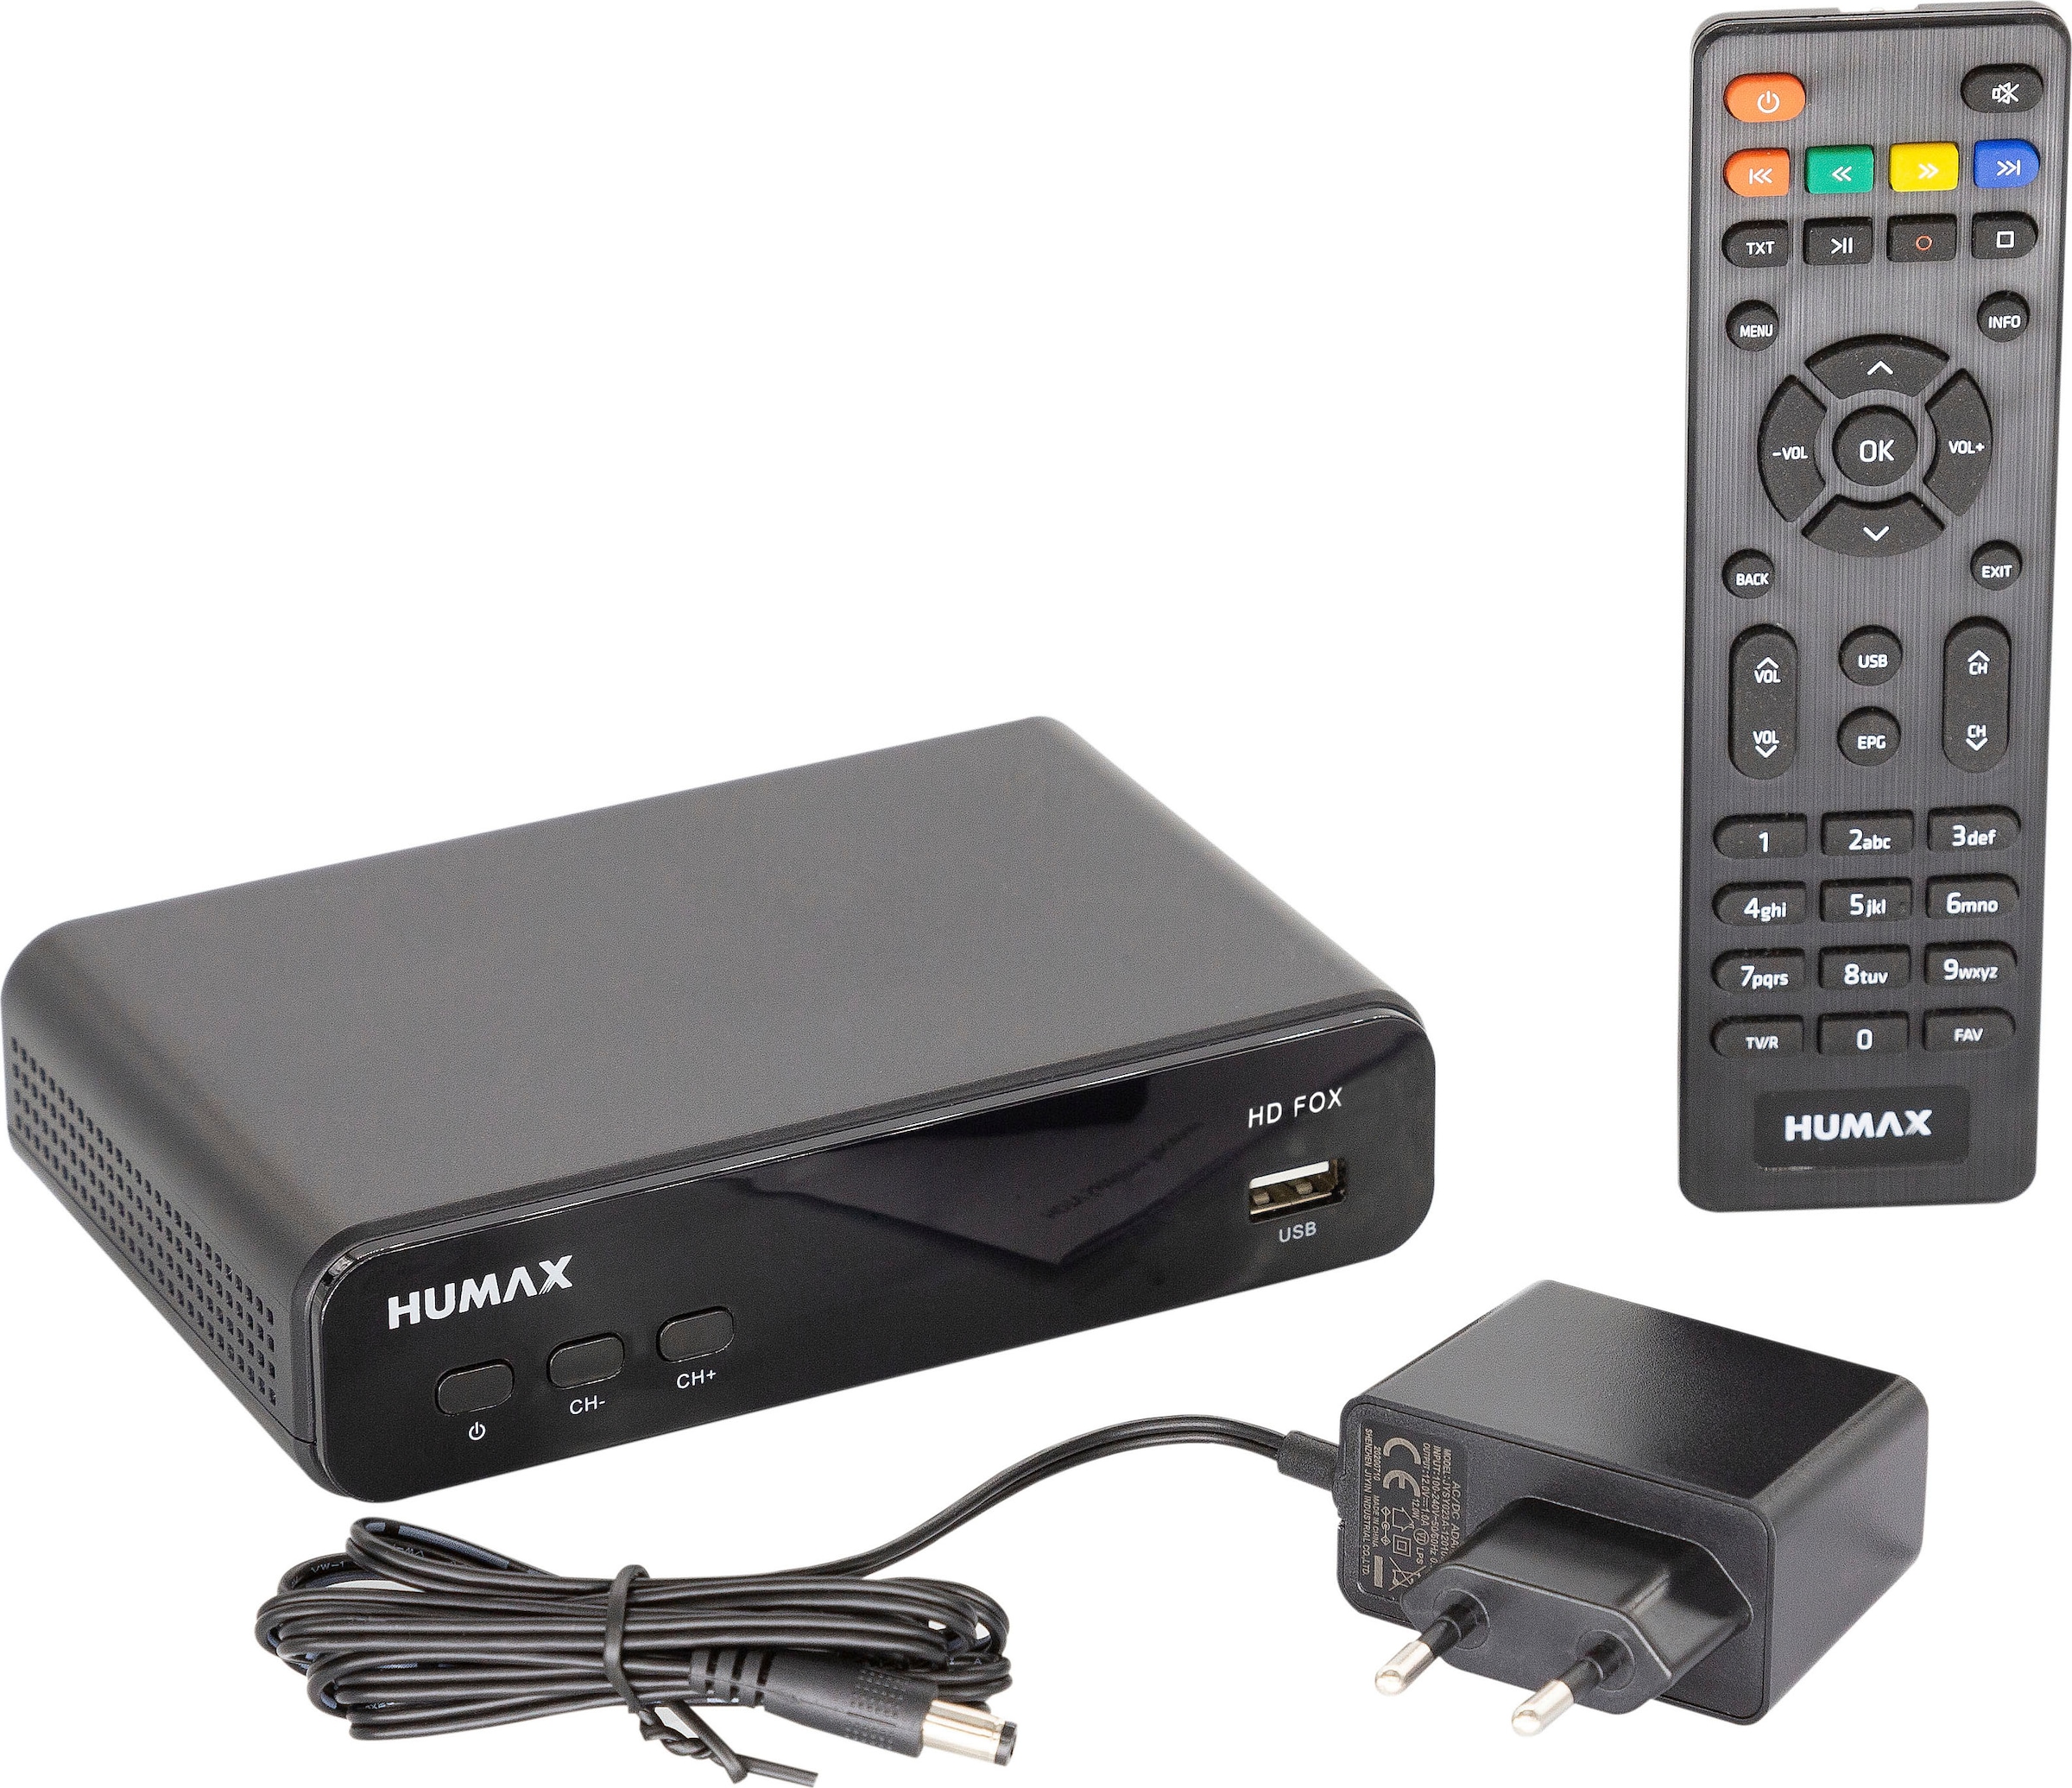 Satellitenreceiver »HD Fox Digitaler«, (USB PVR Ready)